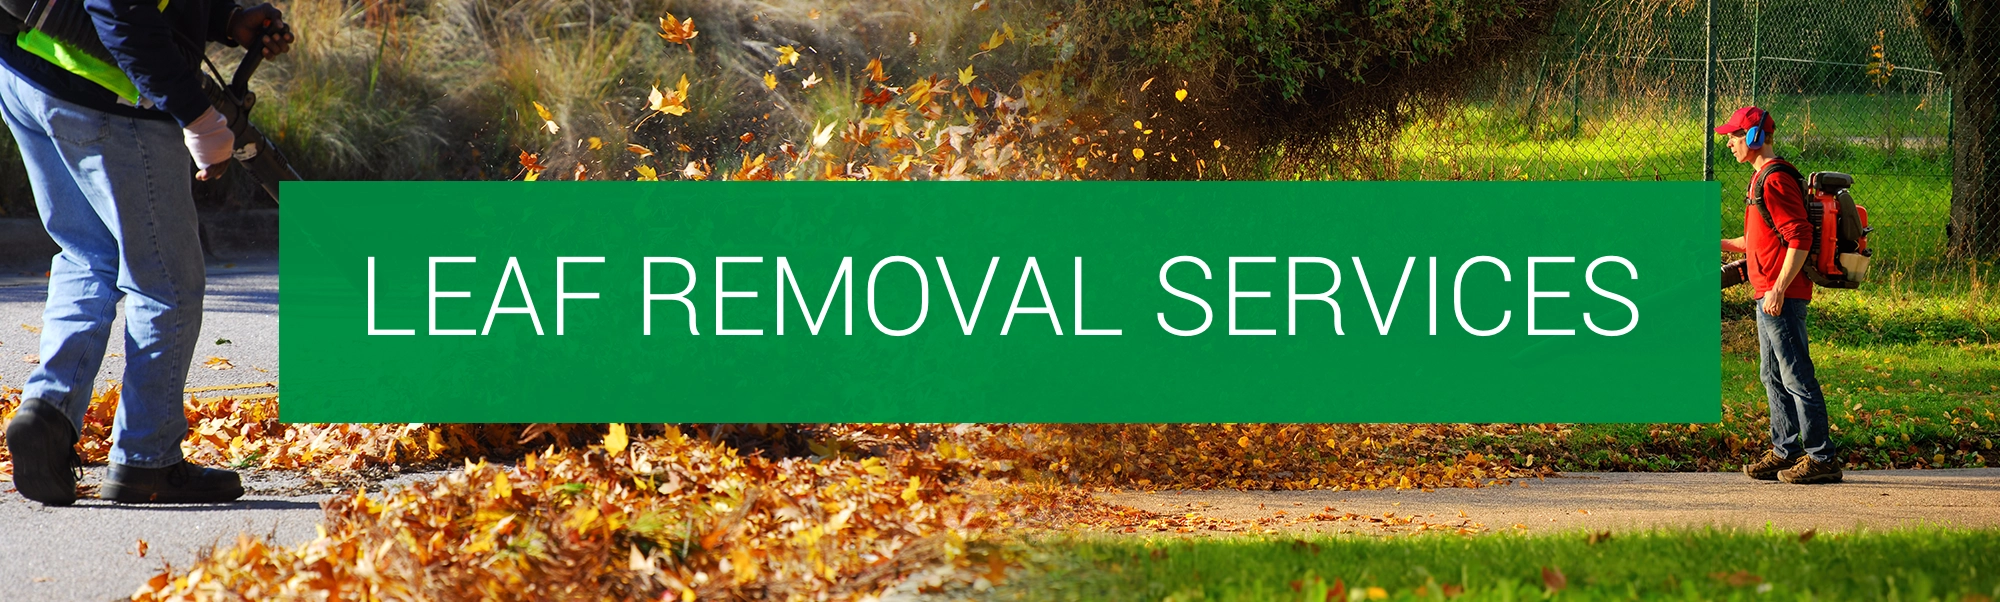 Lawn Care Services in Nebraska - Leaf Removal